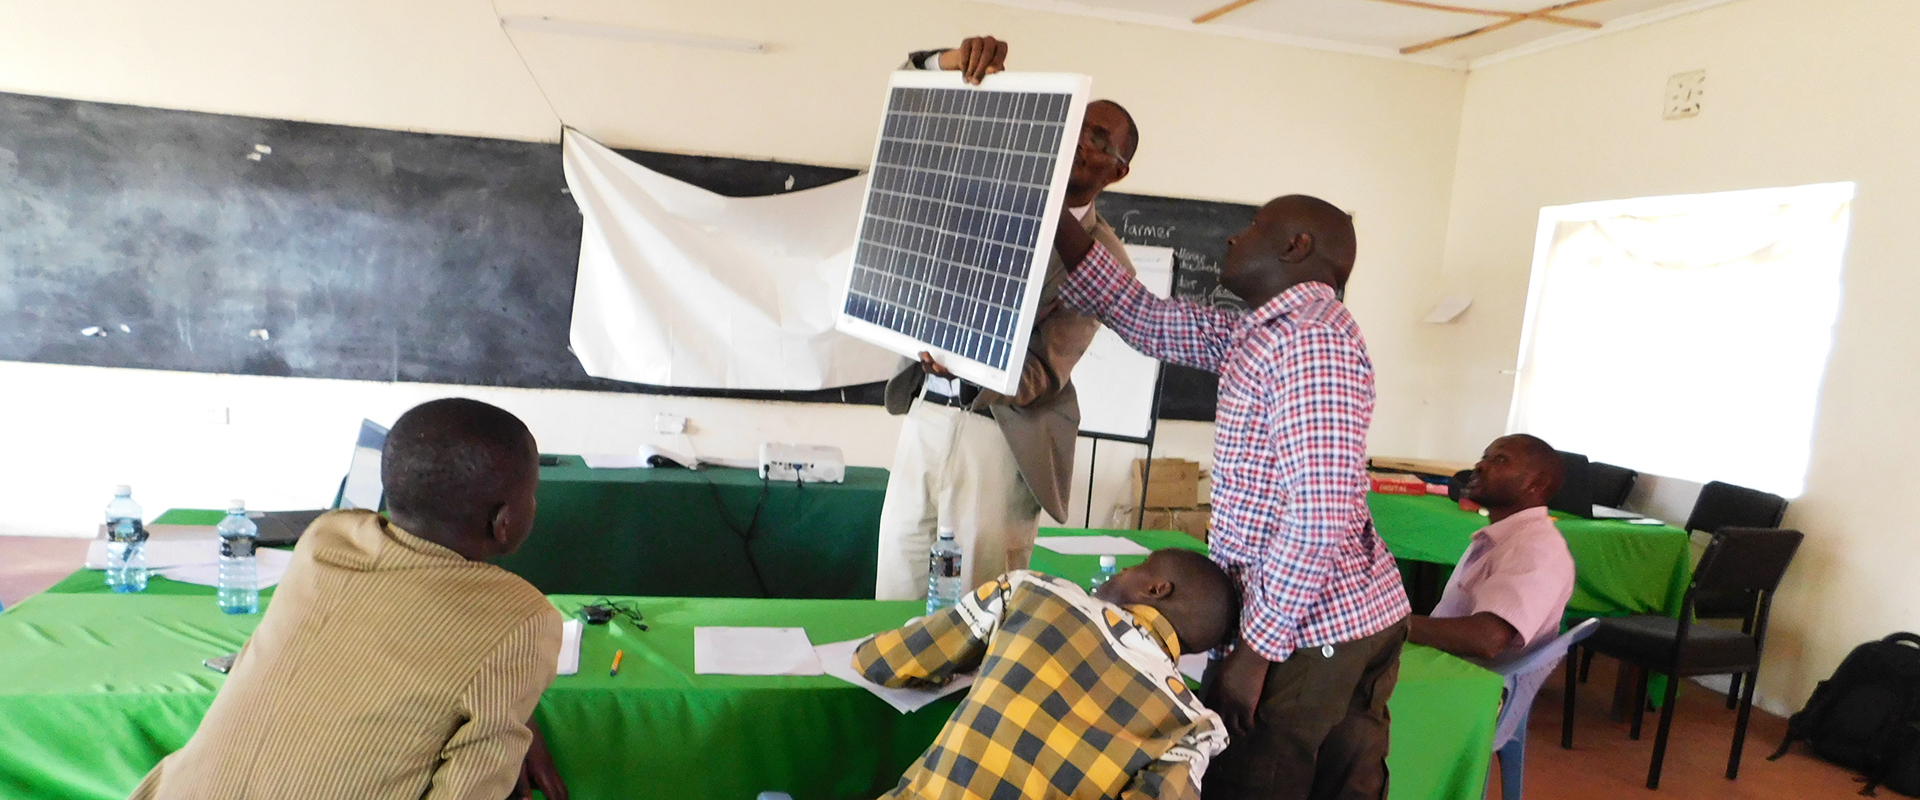 formazione pannelli solari giovani Kenya Mani Tese 2019